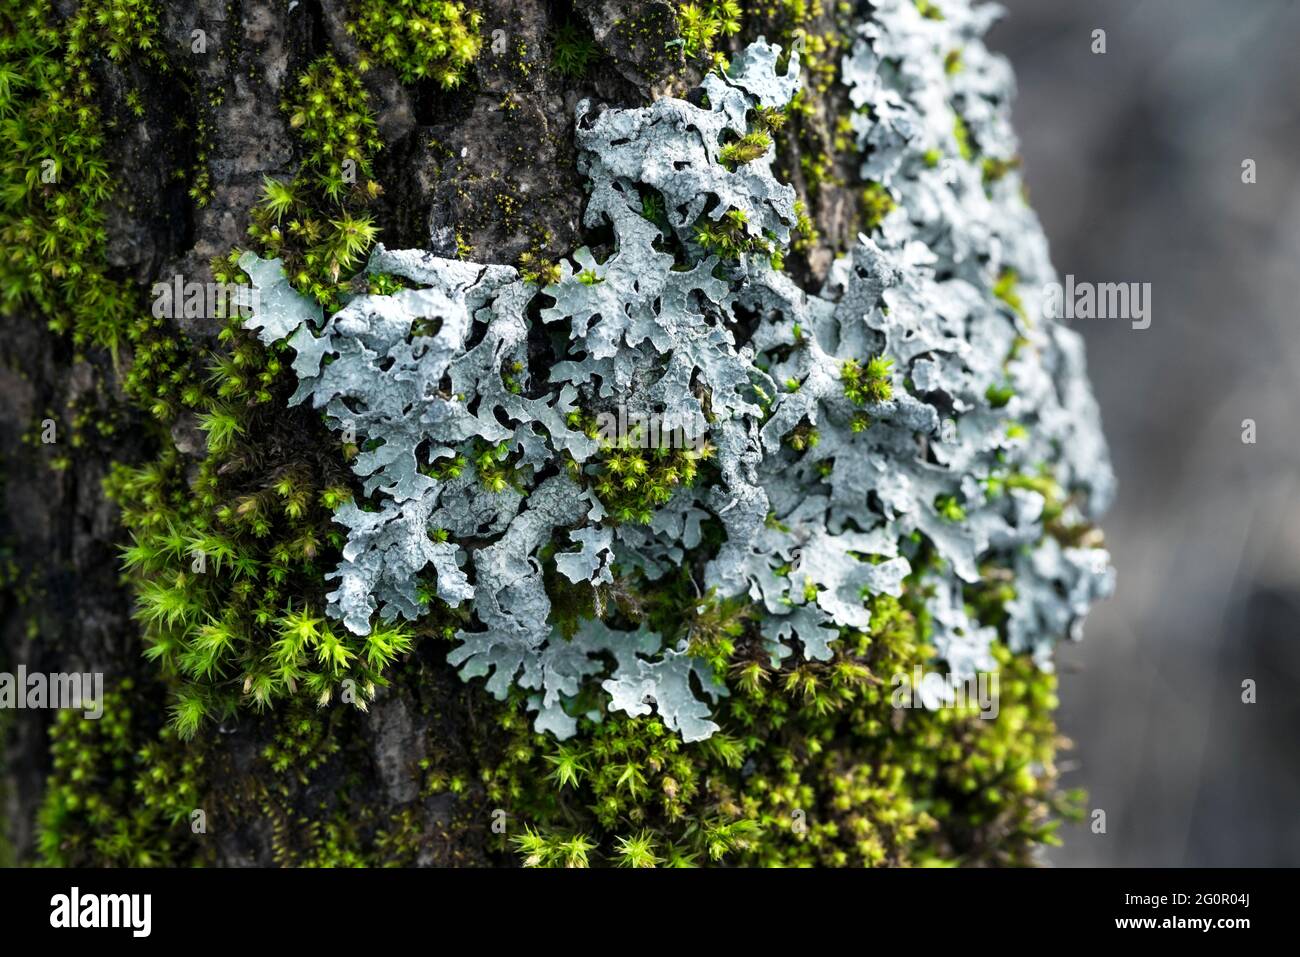 Lichen Parmelia sulcata and bright green moss on a tree bark Stock Photo